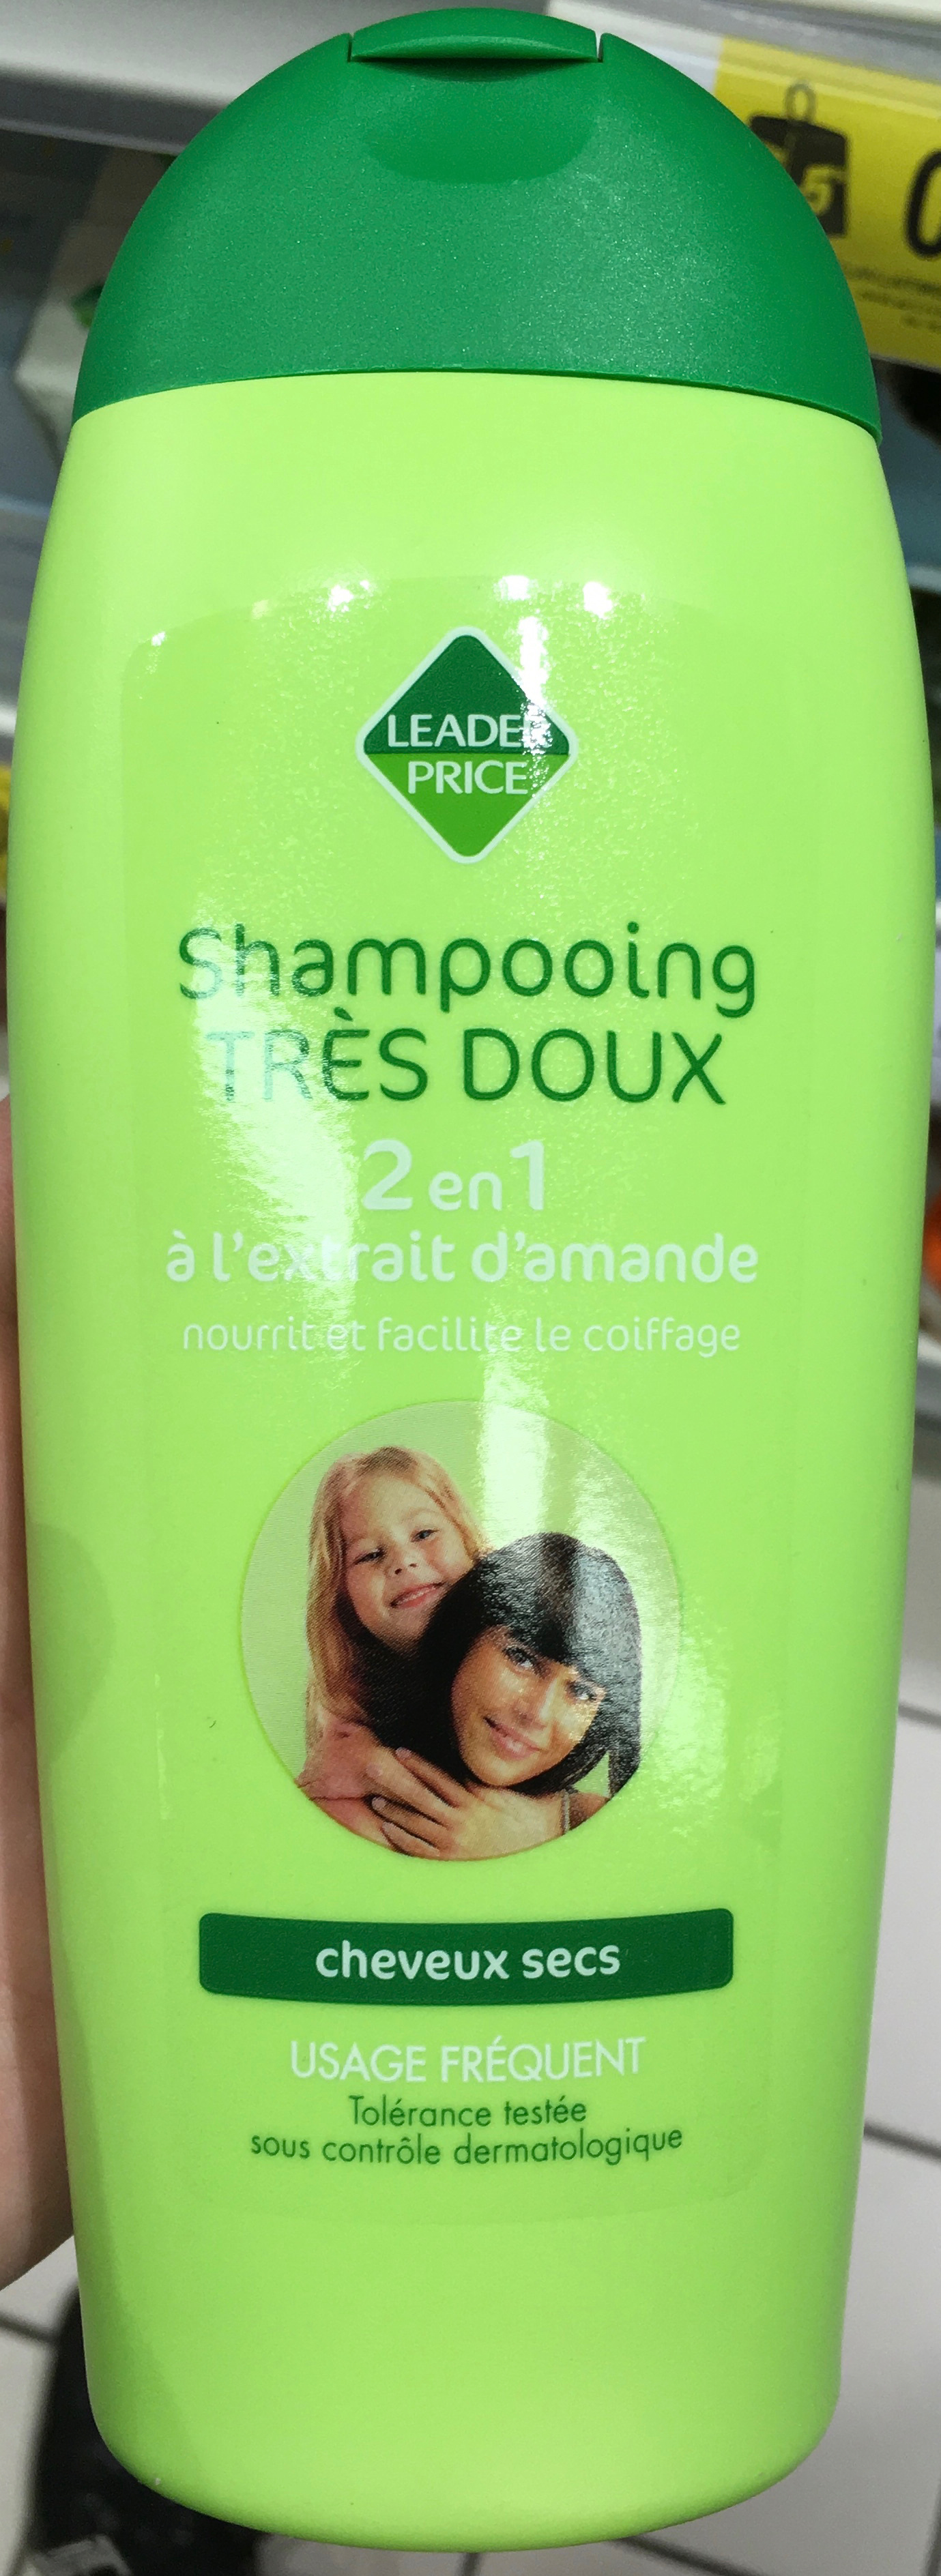 Shampooing très doux 2 en 1 - Product - fr